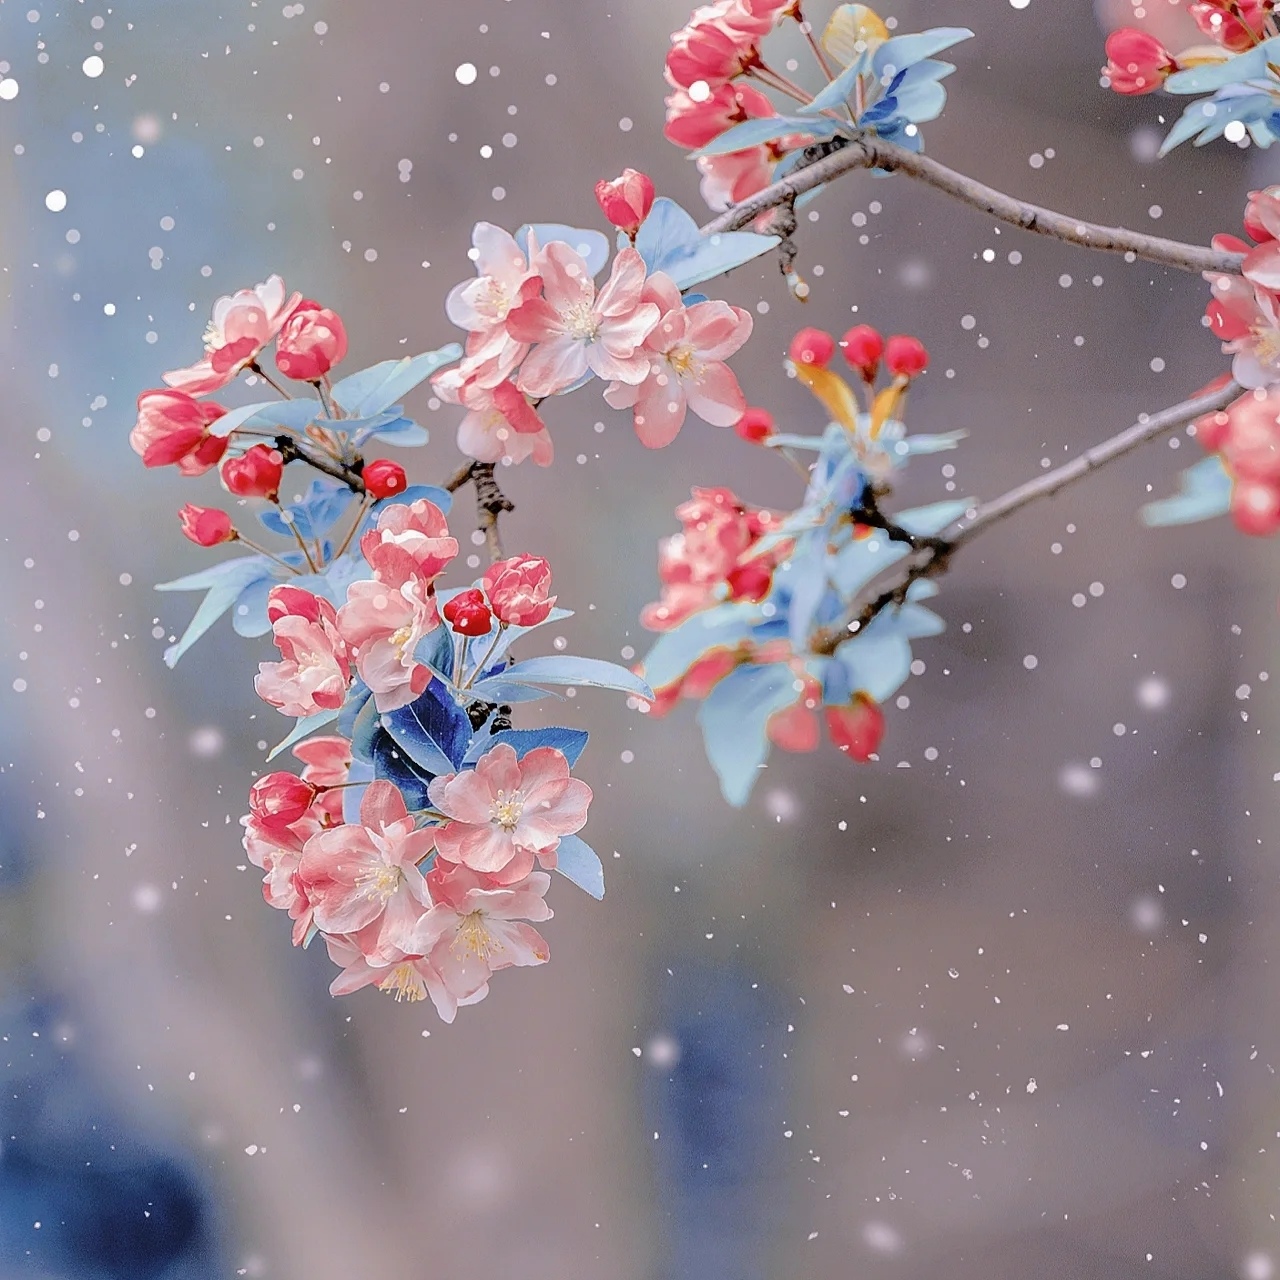 读韩愈的《春雪》看白雪穿树飞花,俏皮灵动,真美!